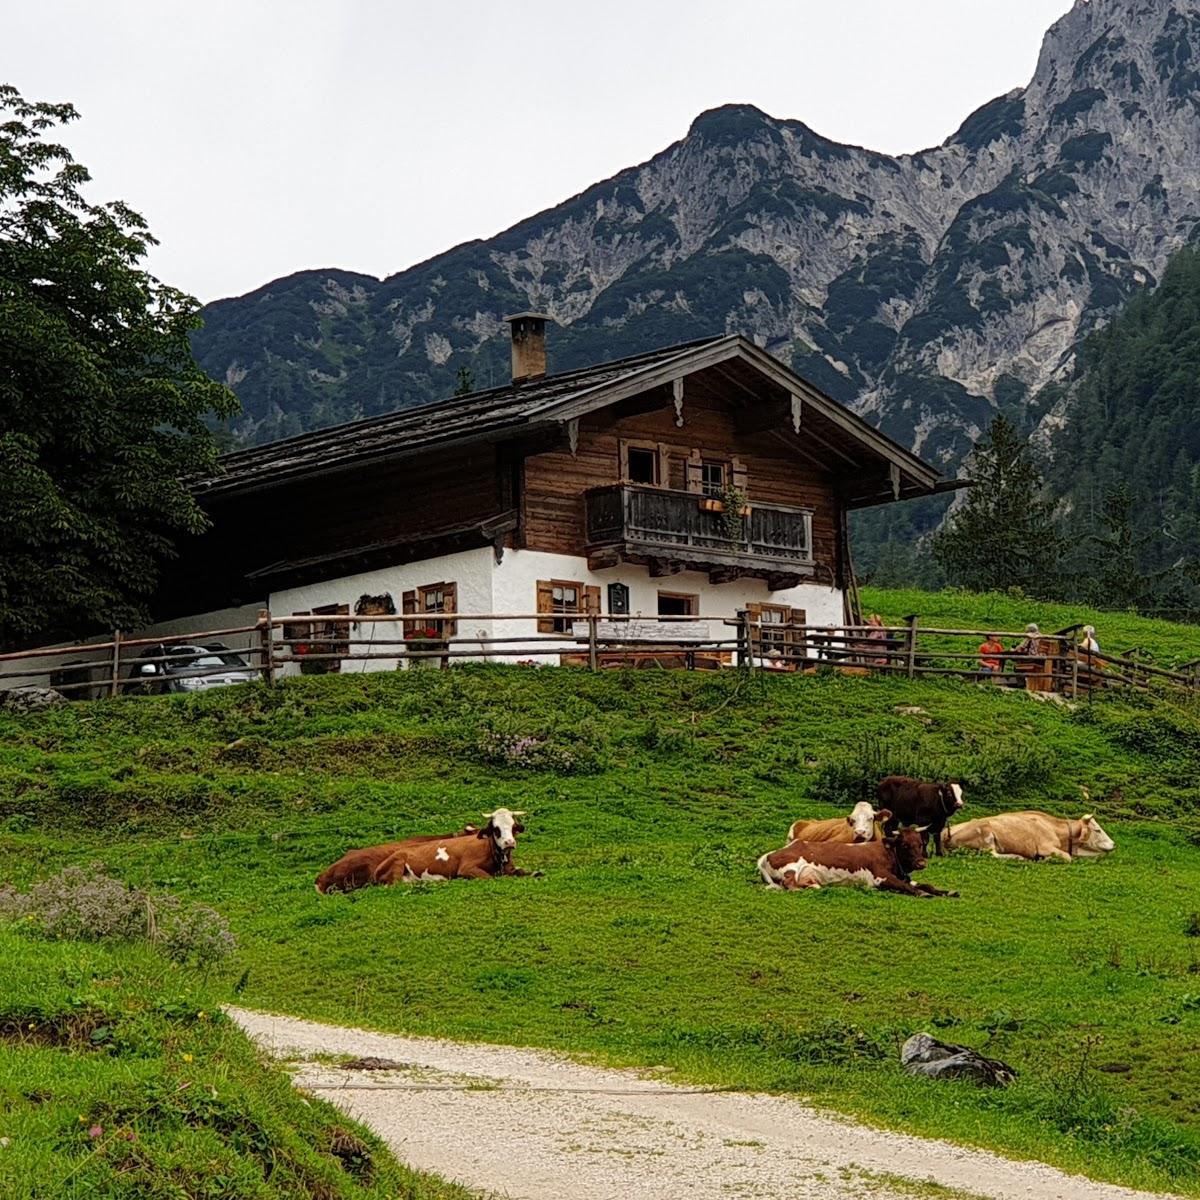 Restaurant "Ragert Alm" in Ramsau bei Berchtesgaden